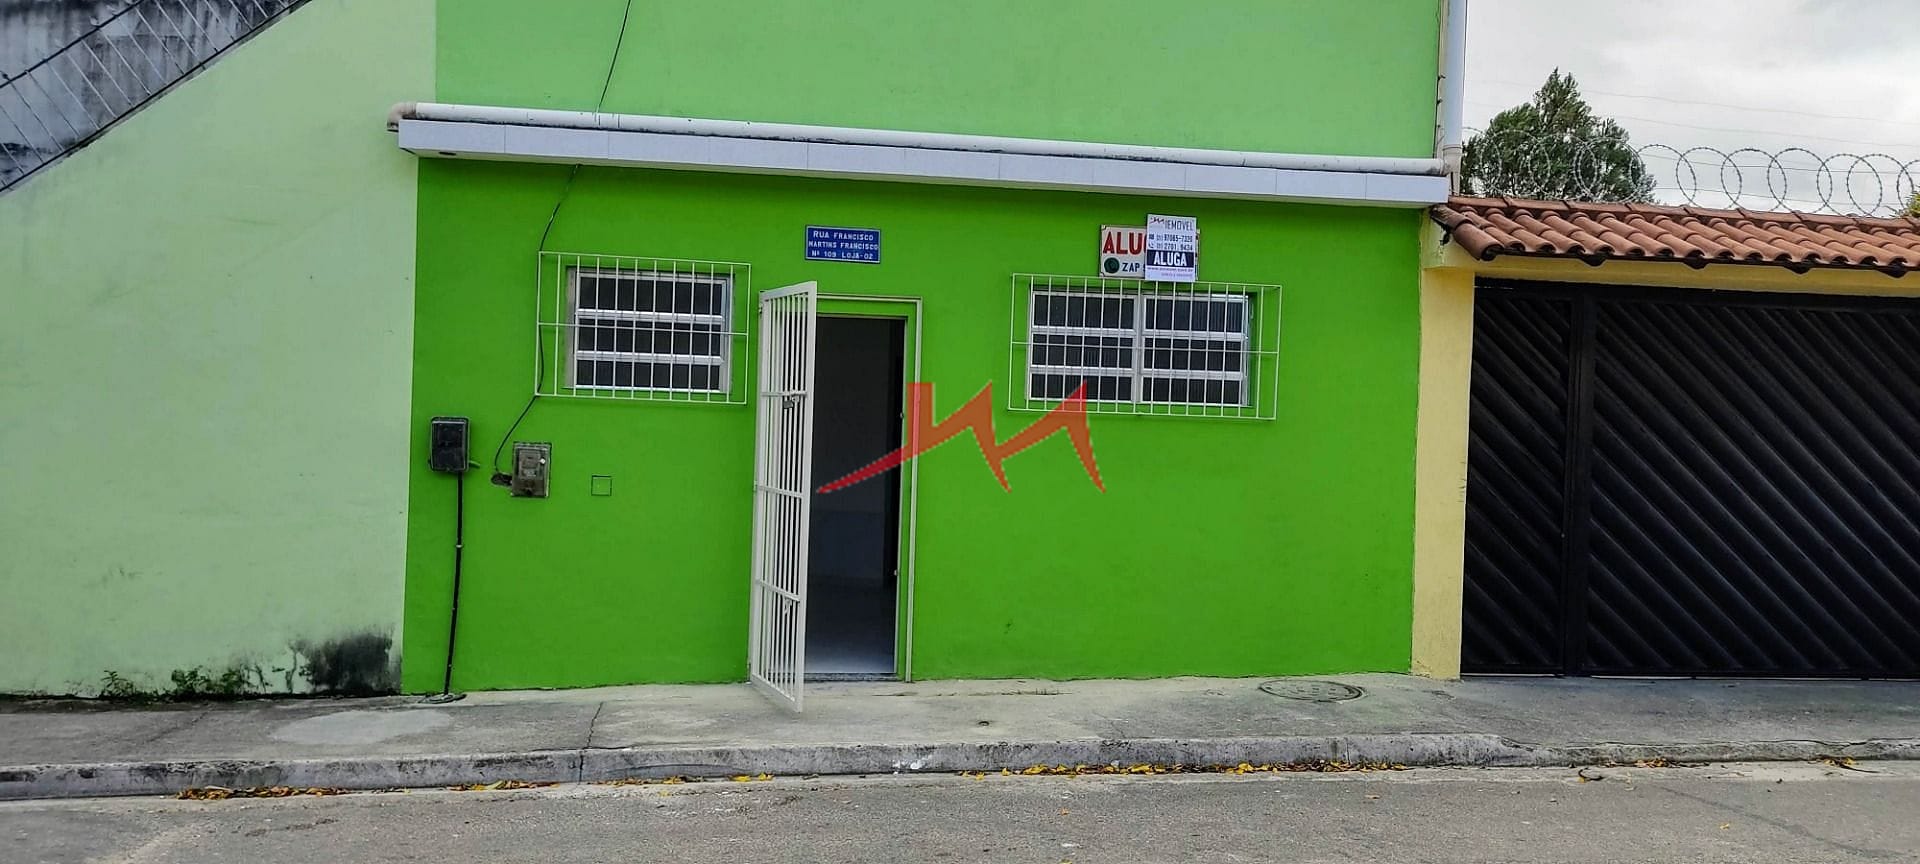 Casa para Locação 2 Quartos, 1 Vaga, Centro, Nova Iguaçu - RJ - FATOR  IMÓVEIS